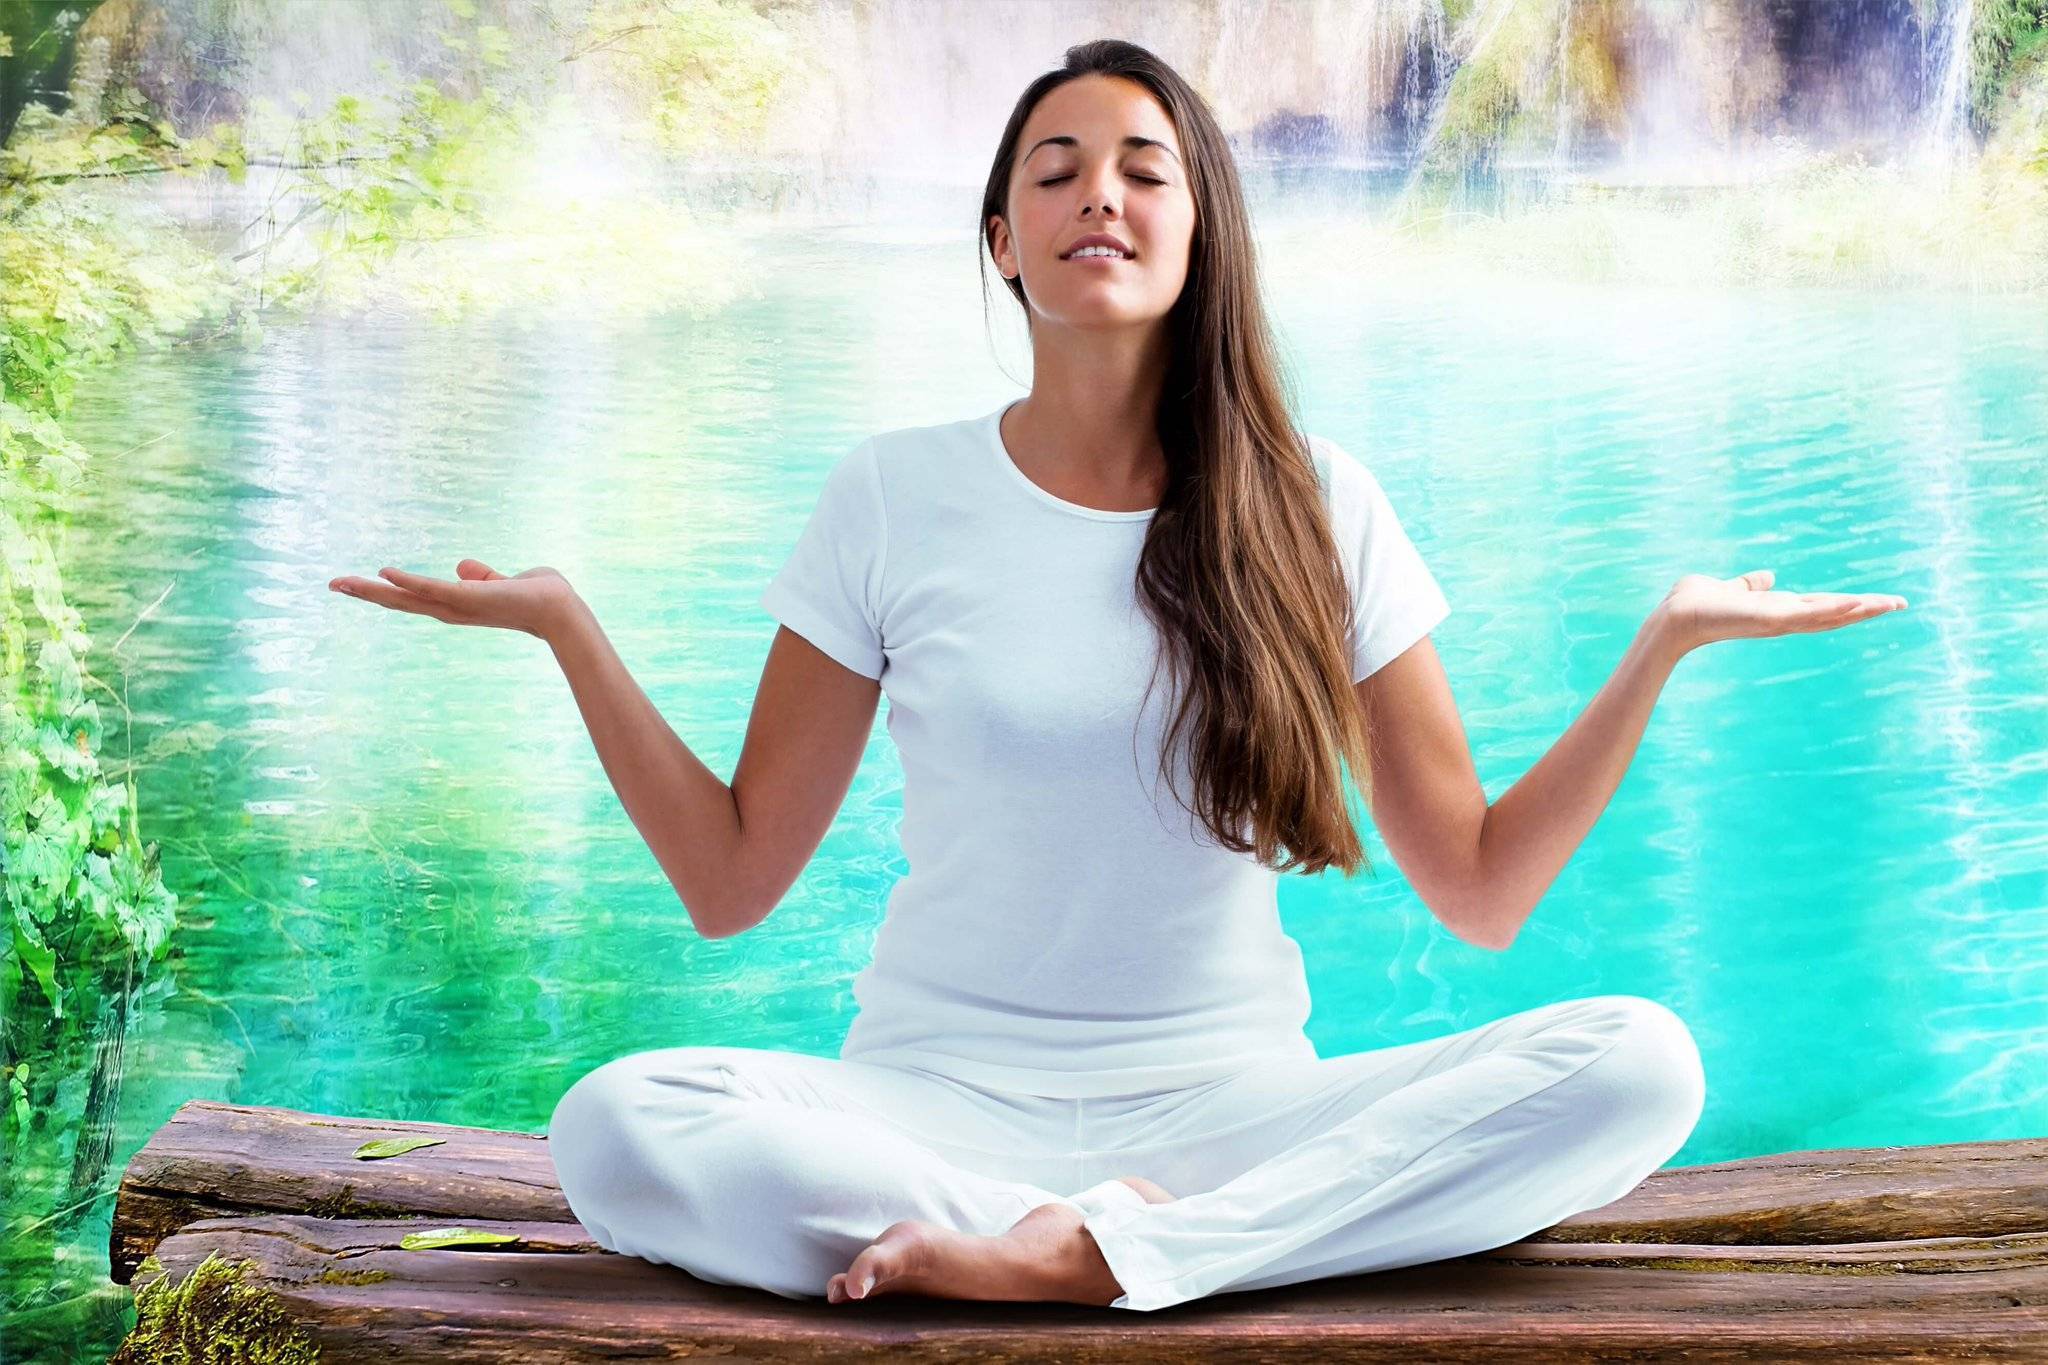 Позы для медитации начинающим: как расслабиться сидя и лежа